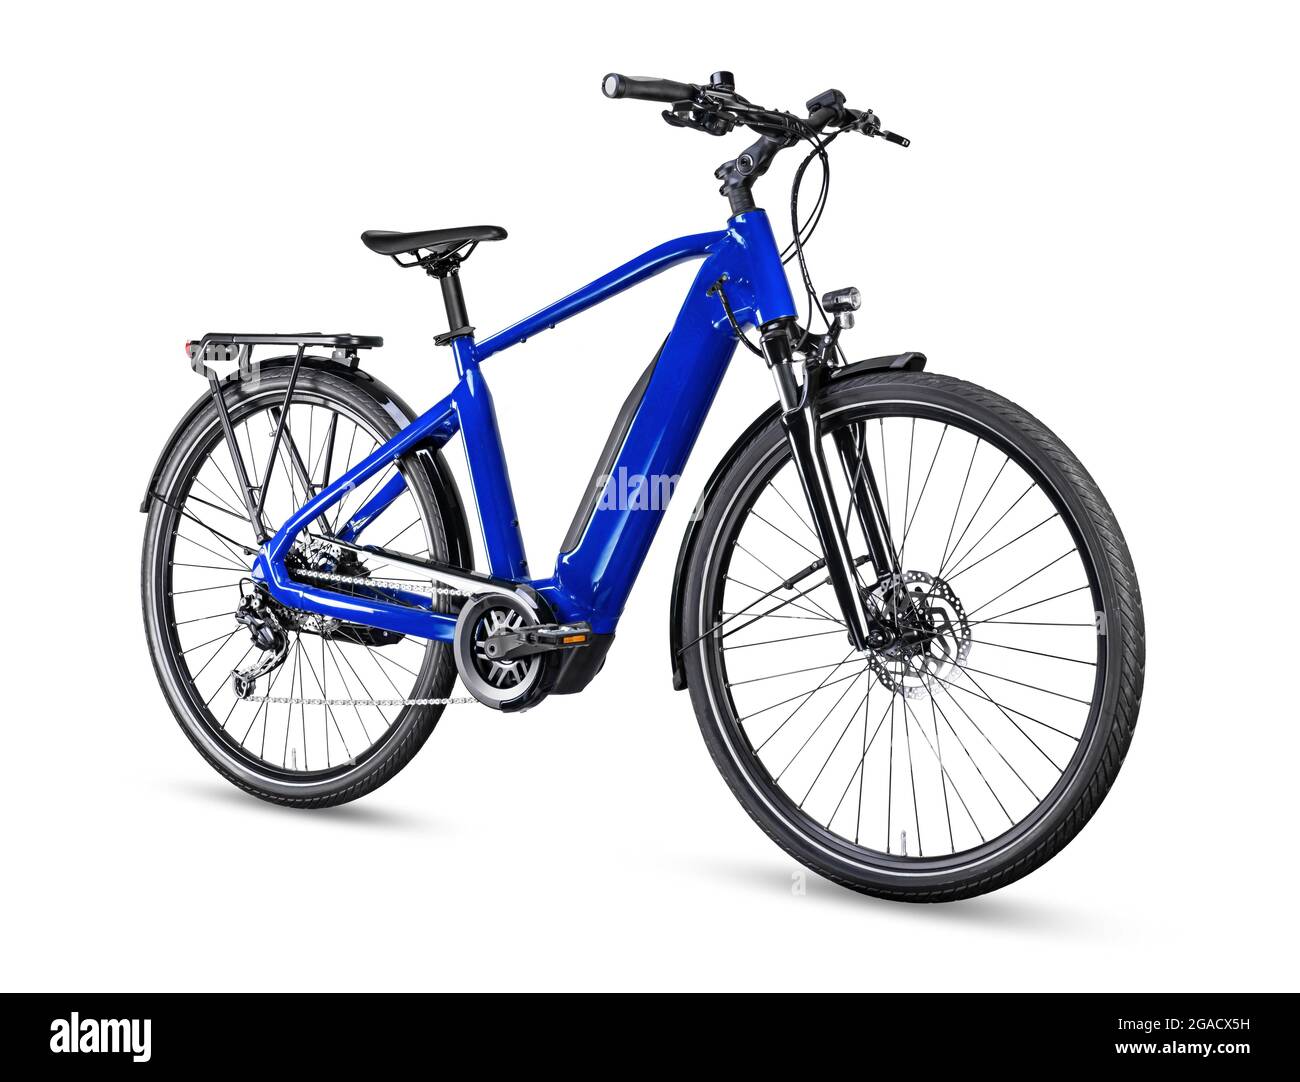 Blaues modernes Mid-Drive-E-Bike-Pedelec für Herren mit Mittelantrieb und E-Bike-Halterung für Städtetouren oder Trekking. Batteriebetriebenes E-Bike isoliert auf weißer BA Stockfoto